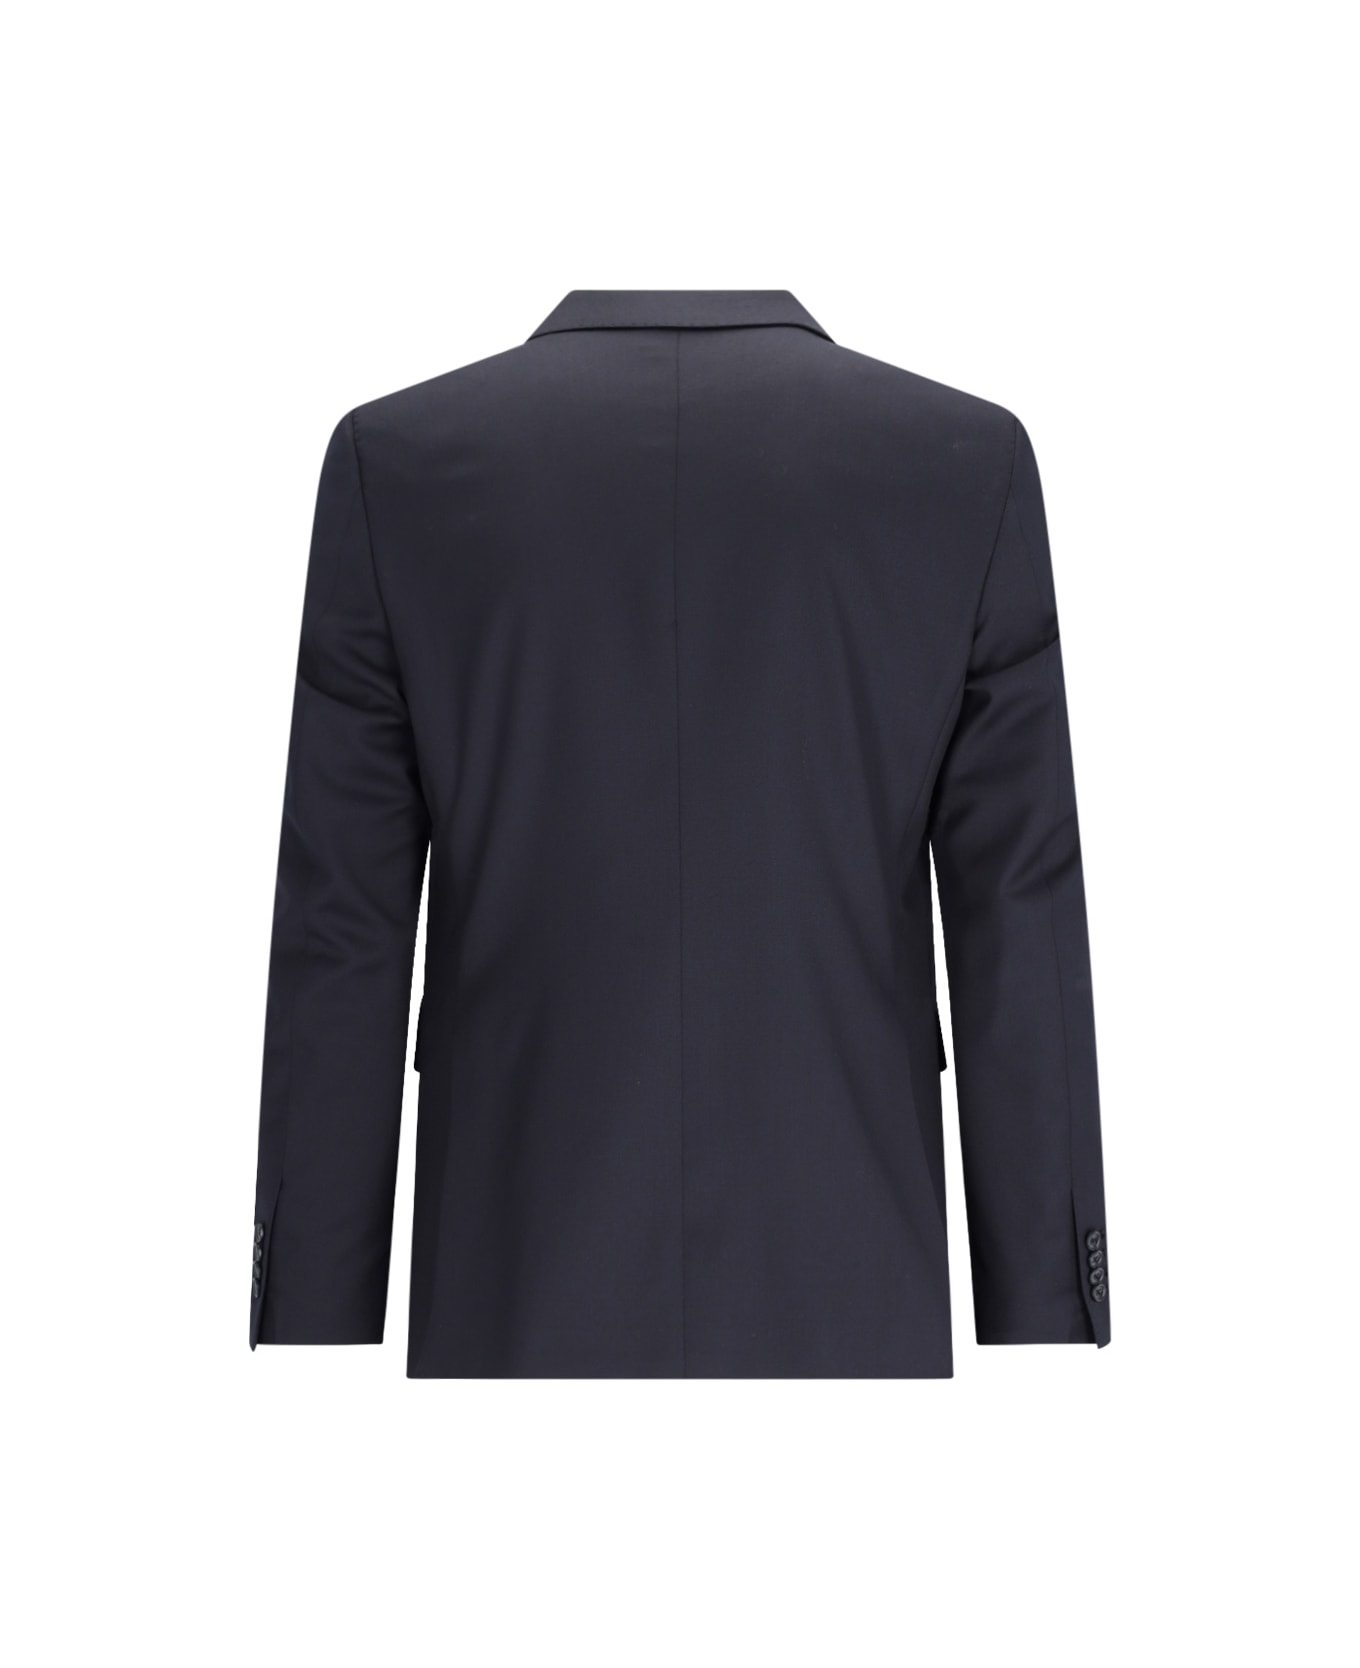 Tagliatore 0205 Virgin Wool Two-piece Suit - Blue スーツ